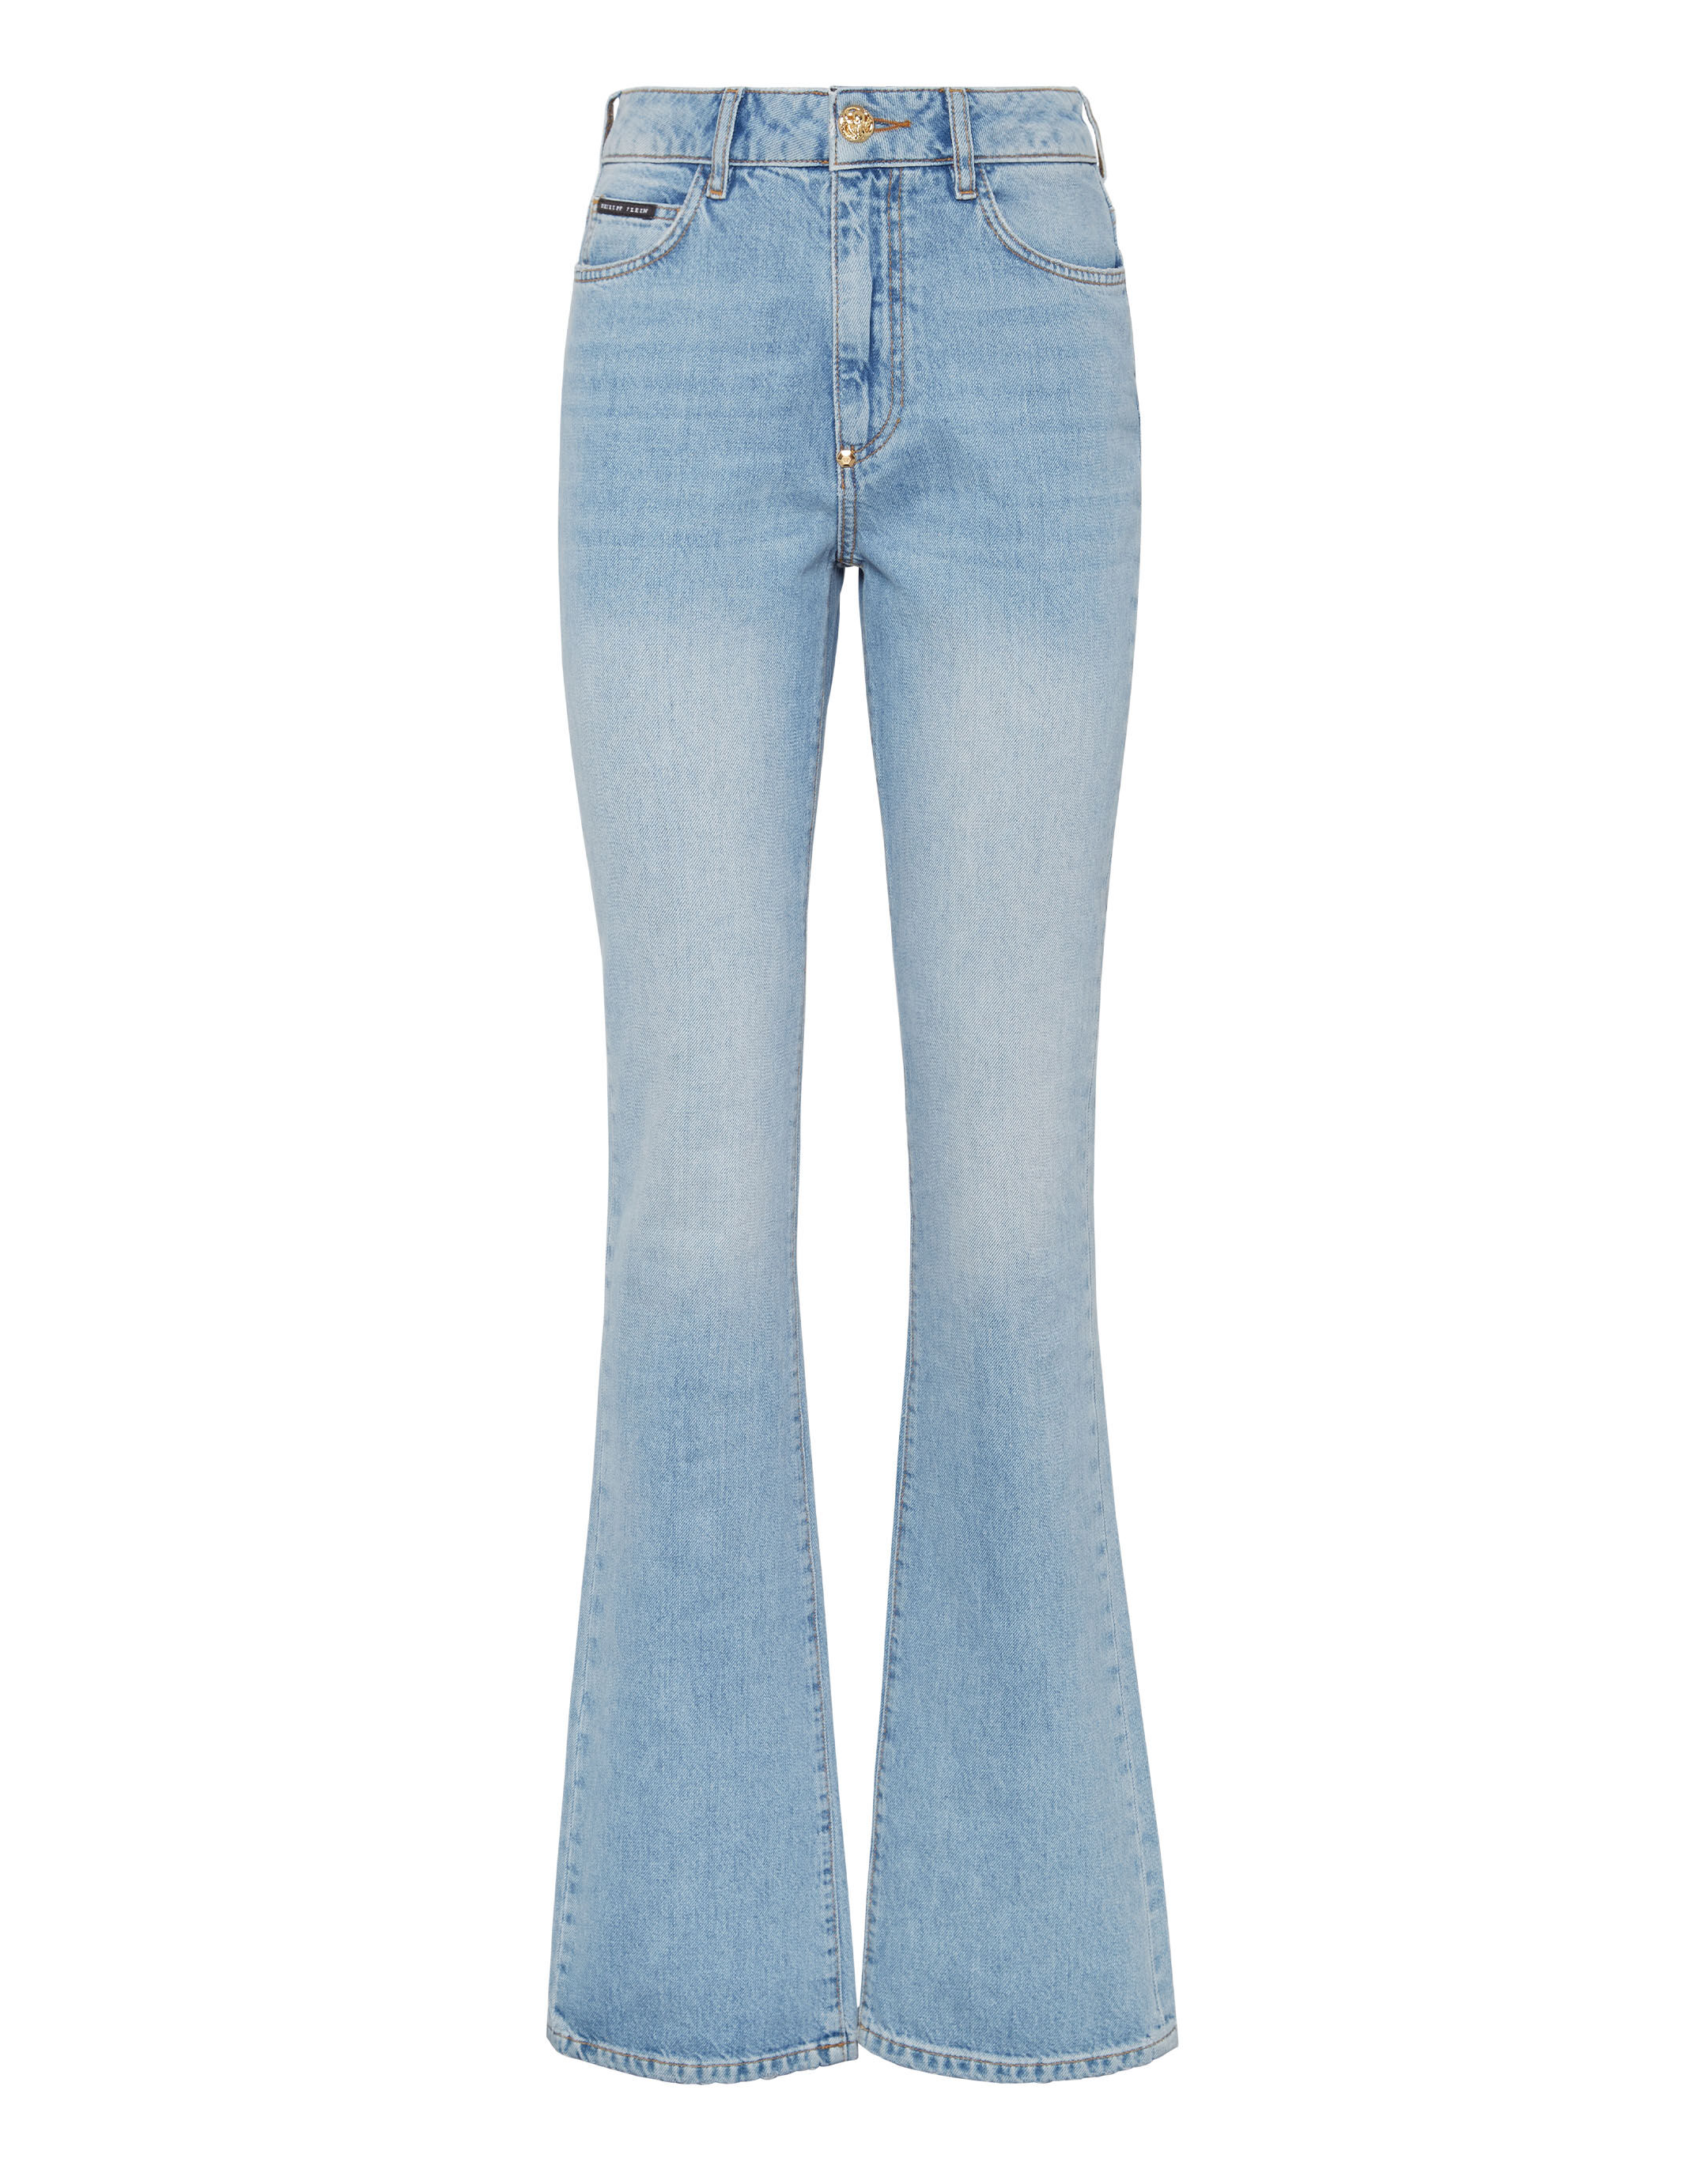 Damen Bekleidung Jeans Röhrenjeans Philipp Plein Denim Andere materialien jeans in Blau 